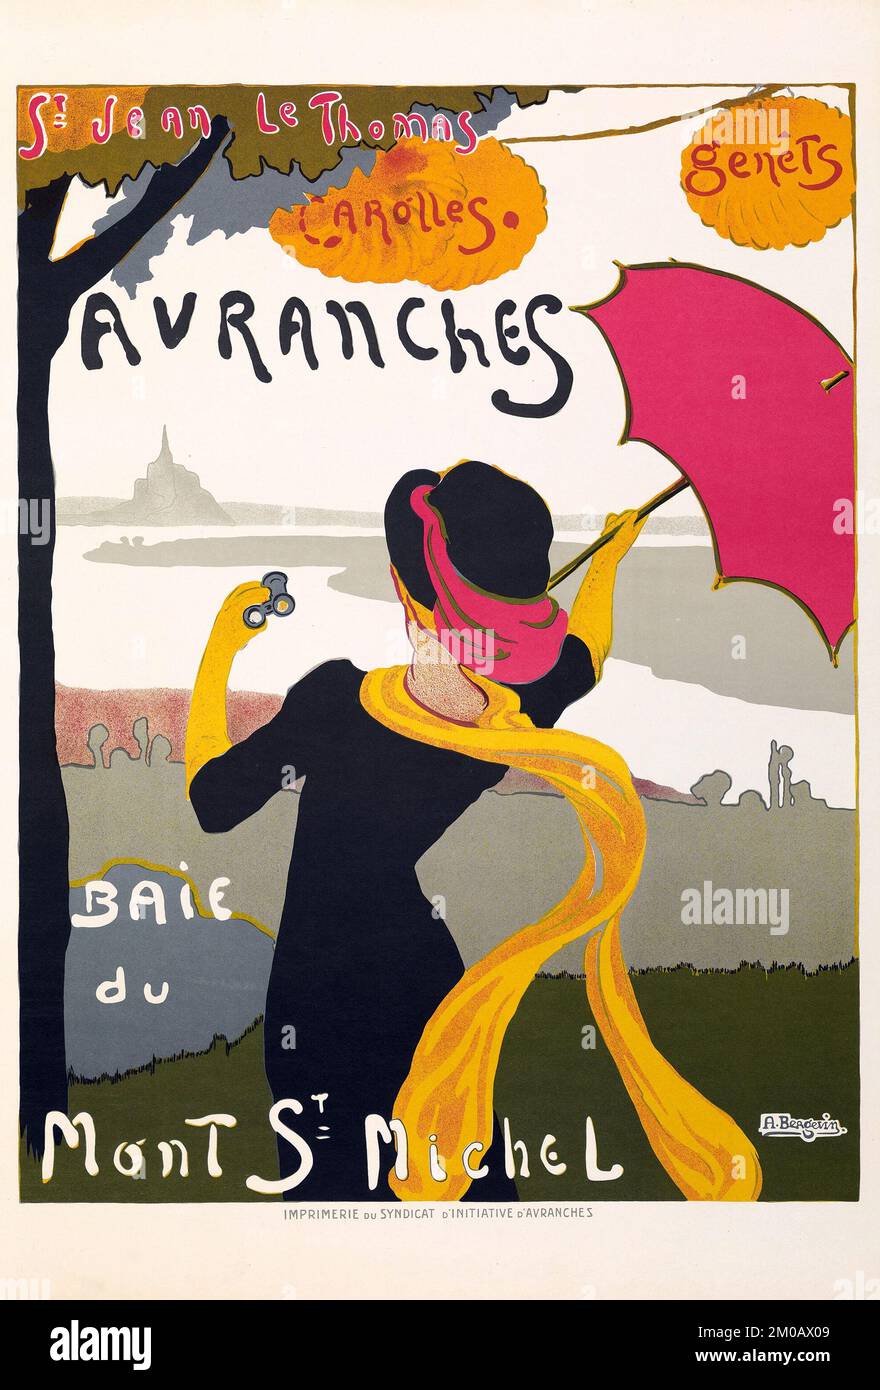 Femme avec parapluie - Avranches Baie du Mont St Michel (Syndicat d'Initiative d'Avranches, v.1910) Banque D'Images